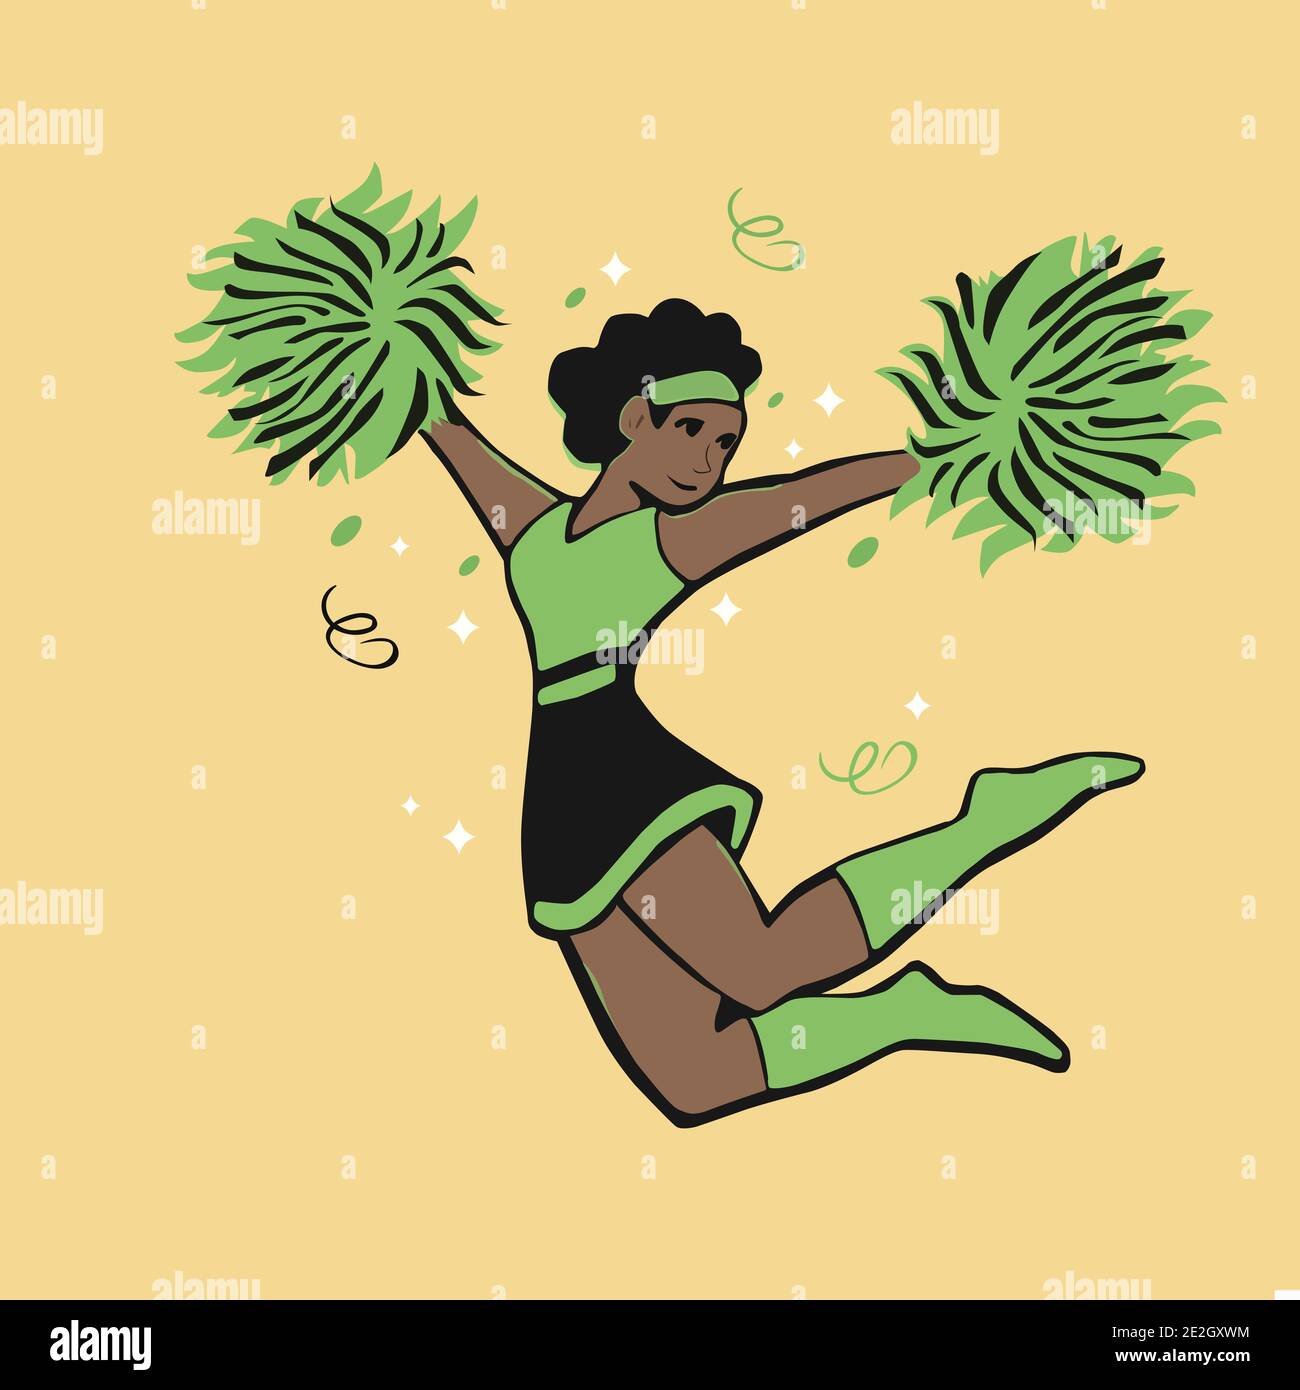 Ebony Cheerleader Fun